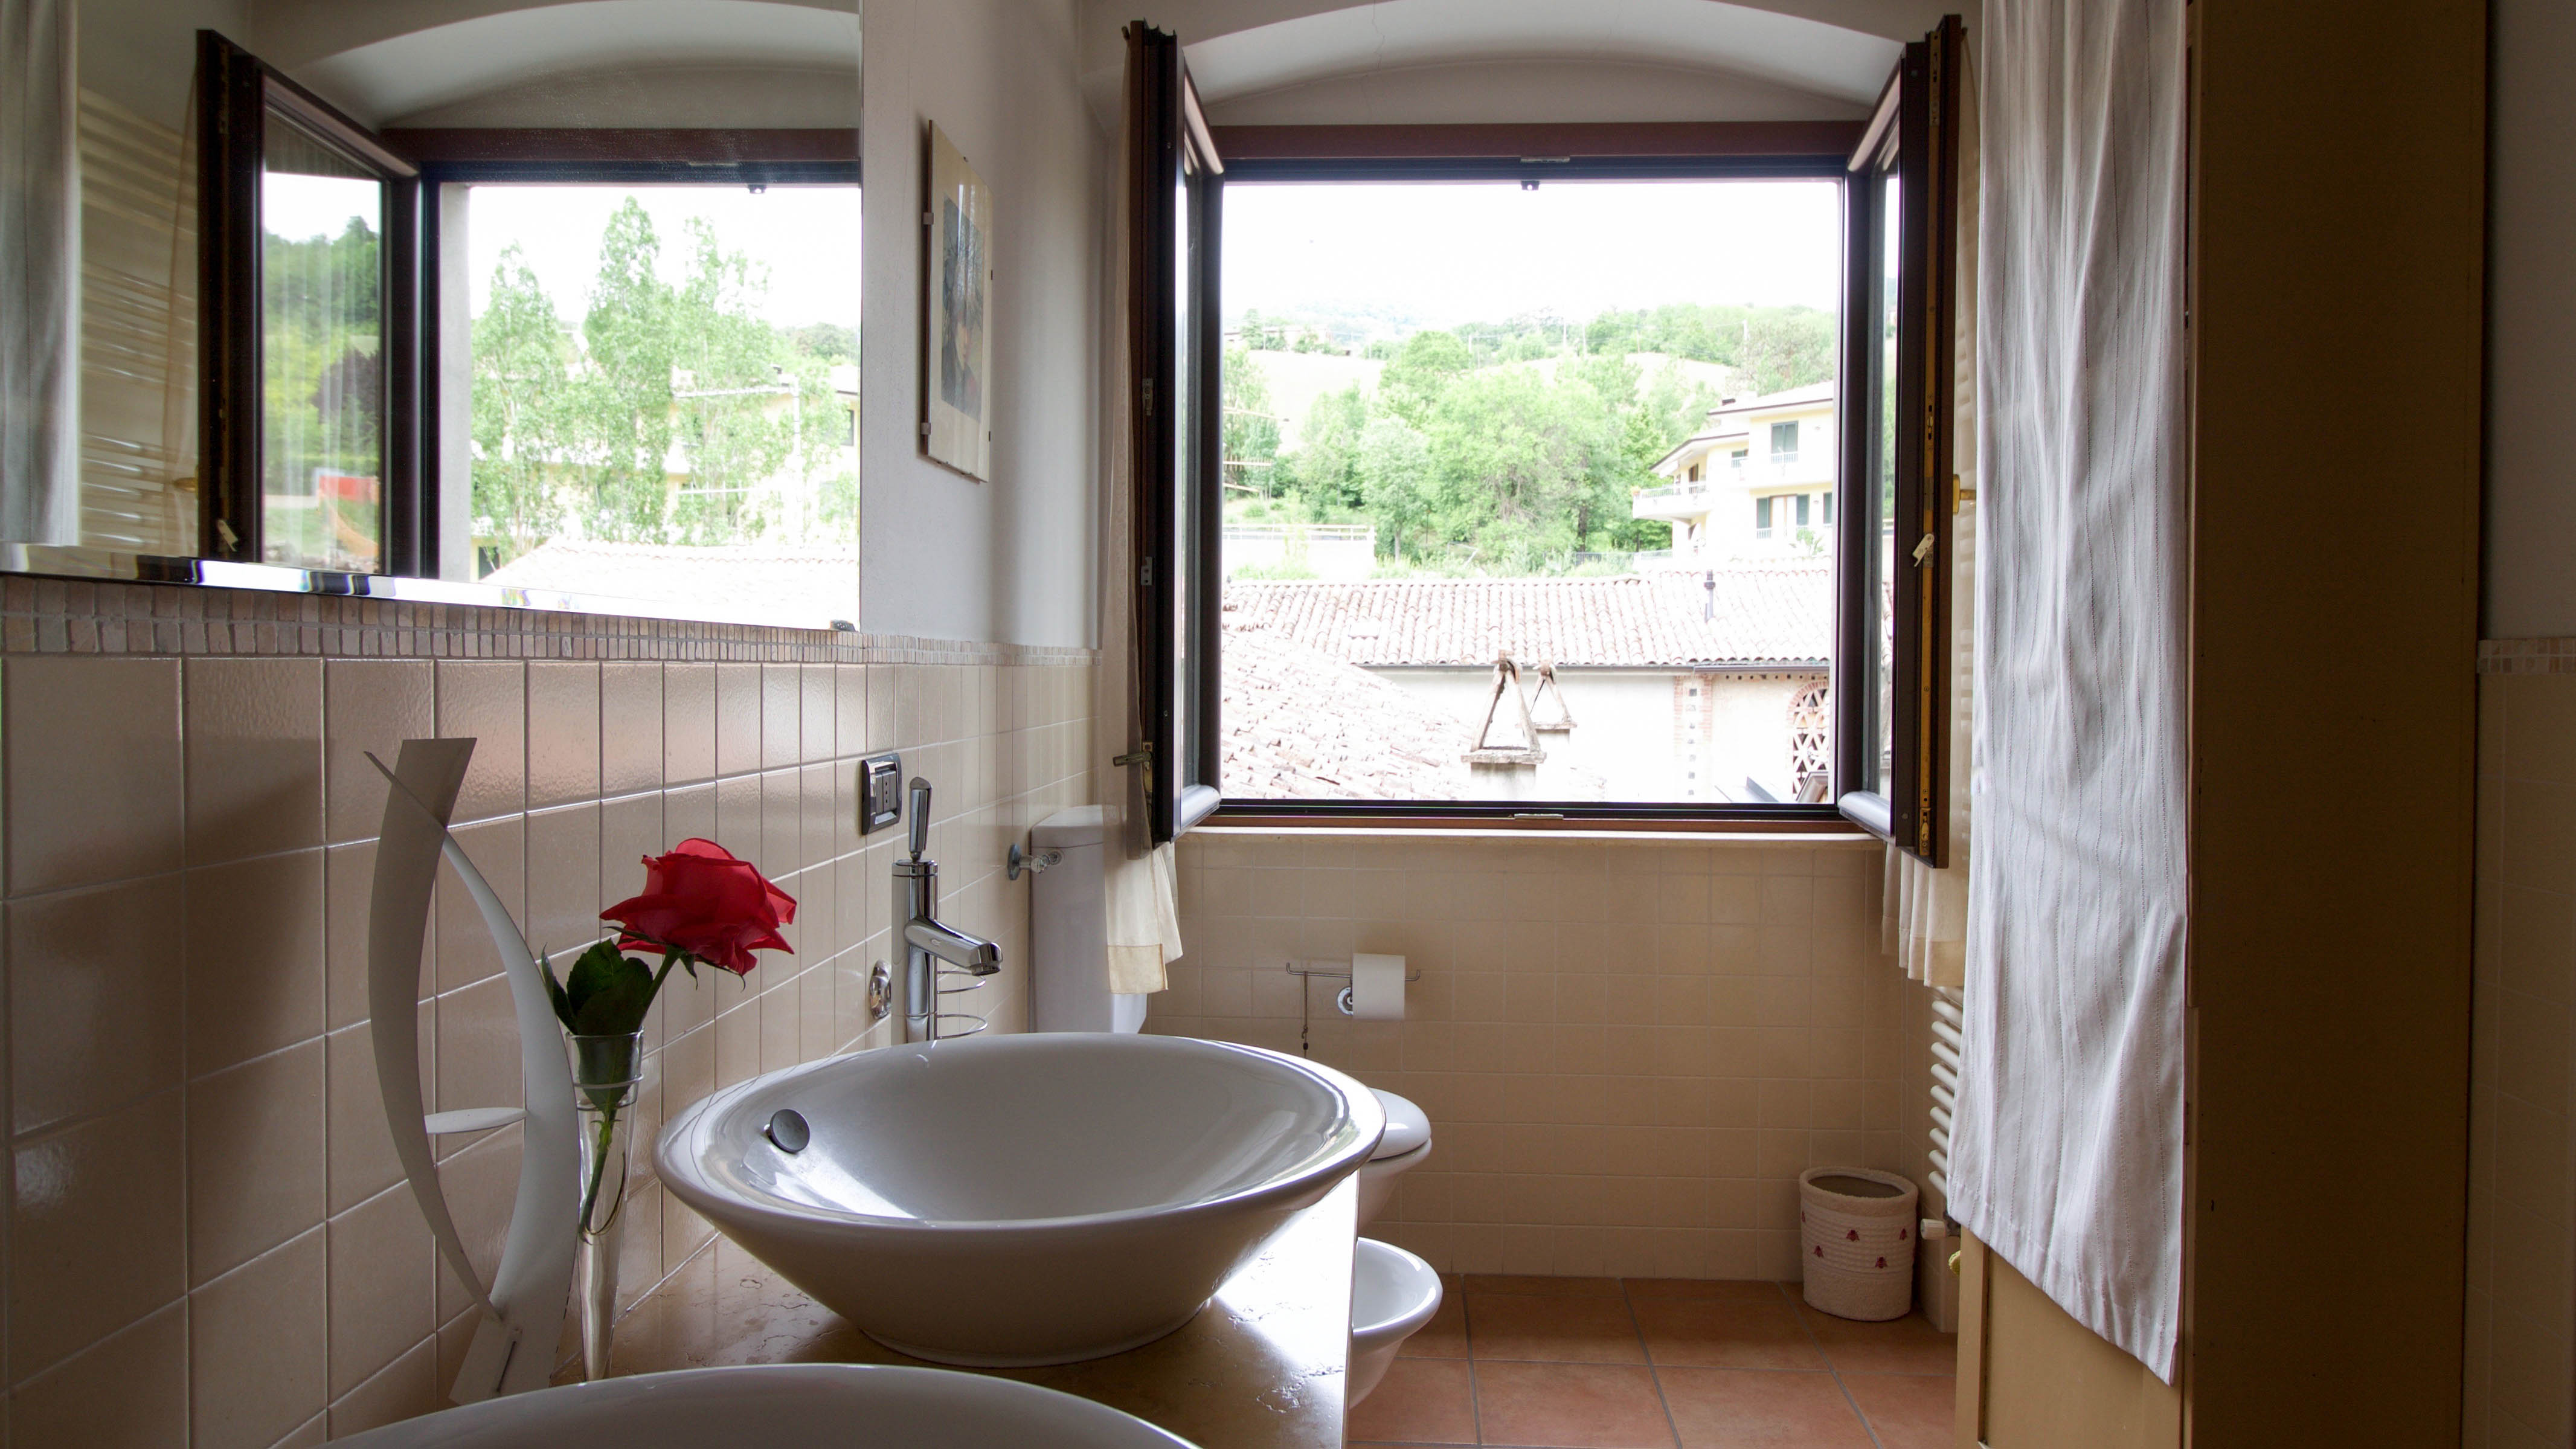 Вентиляция ванной комнаты с открытым окном